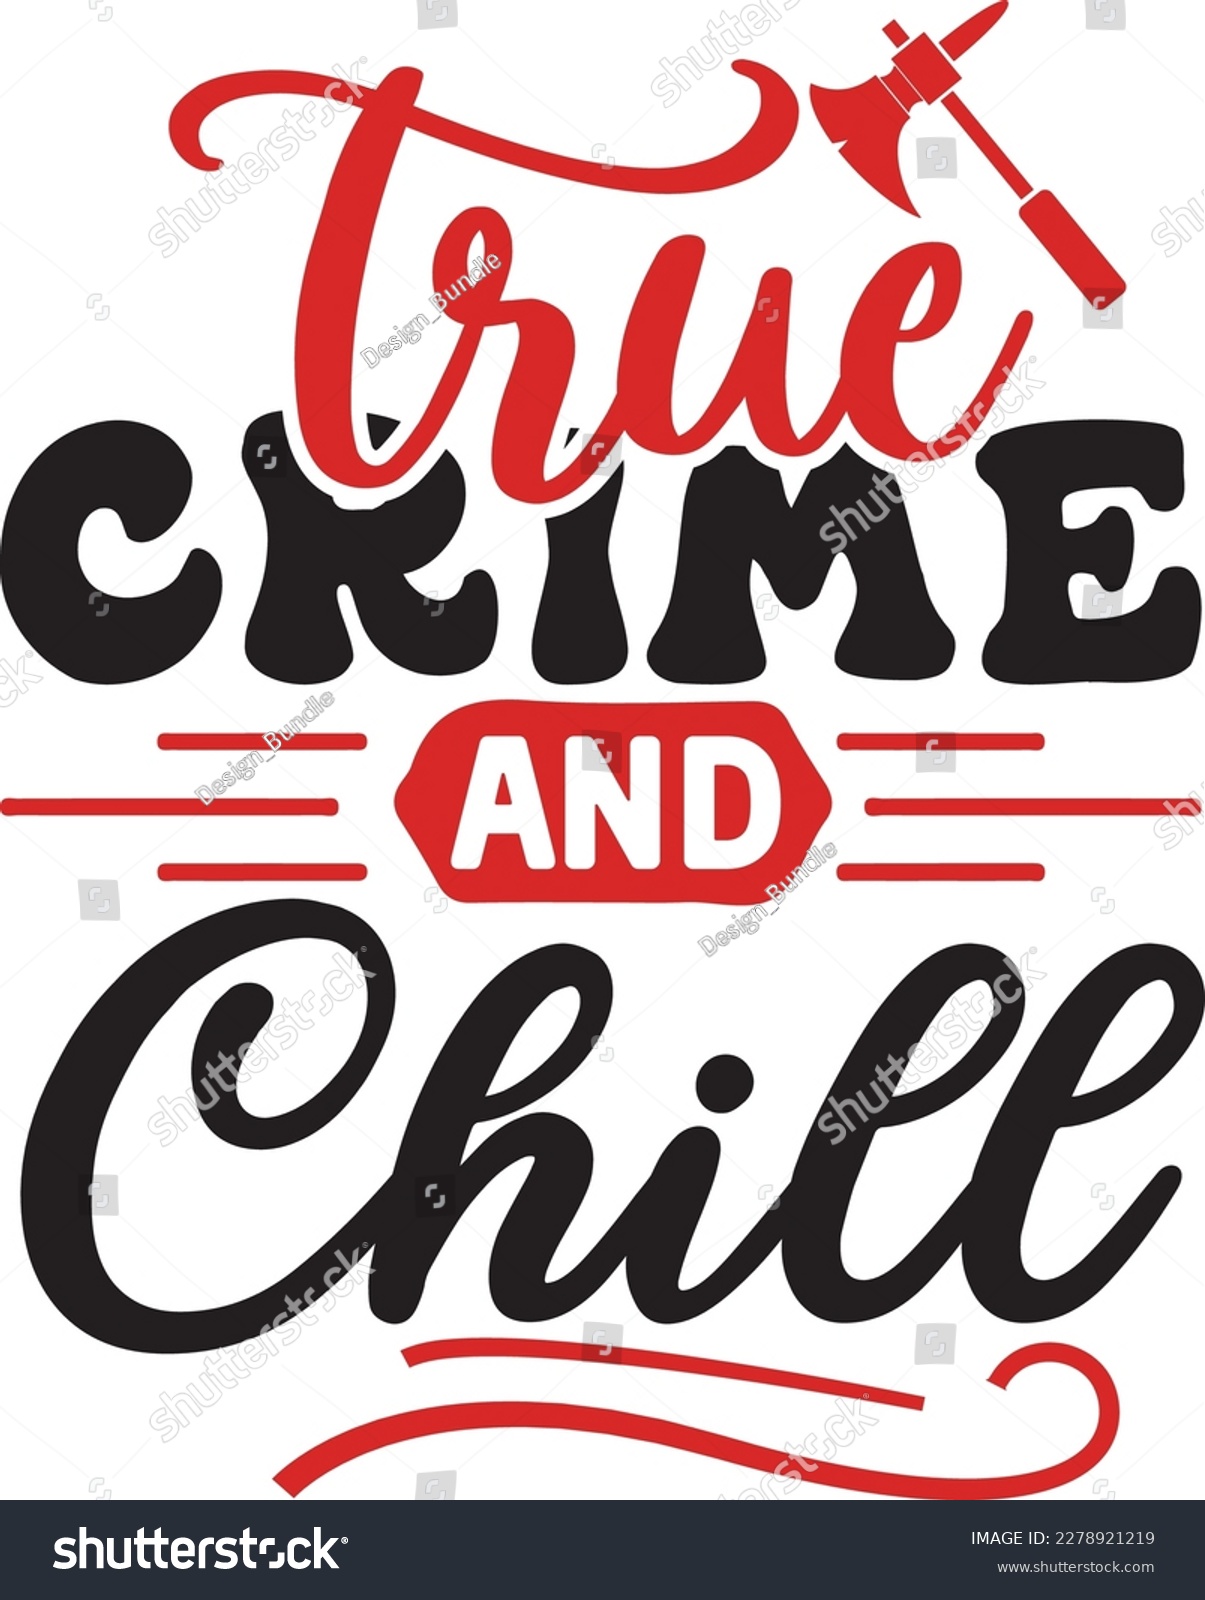 SVG of True Crime and Chill svg ,True Crime SVG Bundle SVG design, True Crime Bundle, True Crime SVG design bundle svg